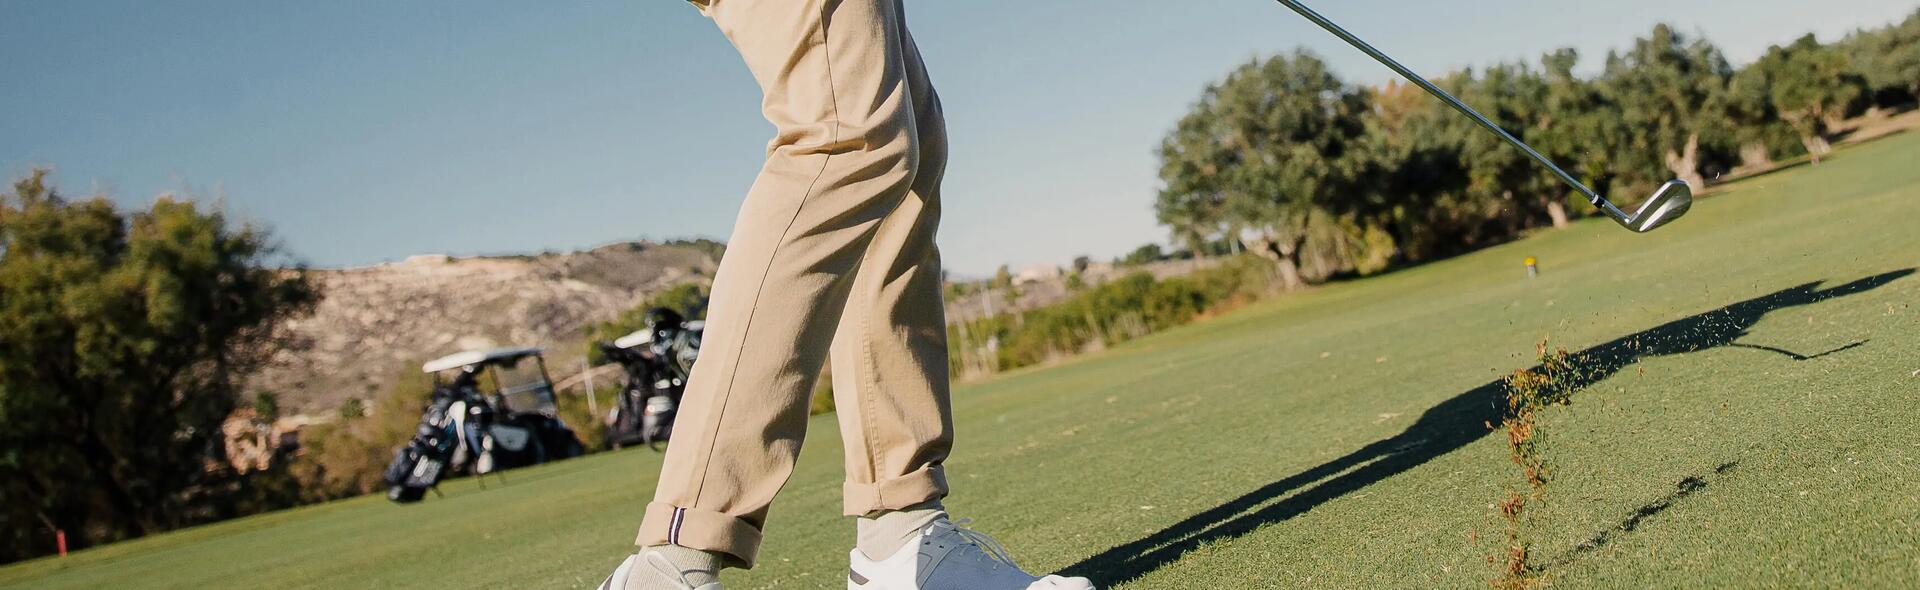 ¿Cómo mejorar tu práctica de golf?